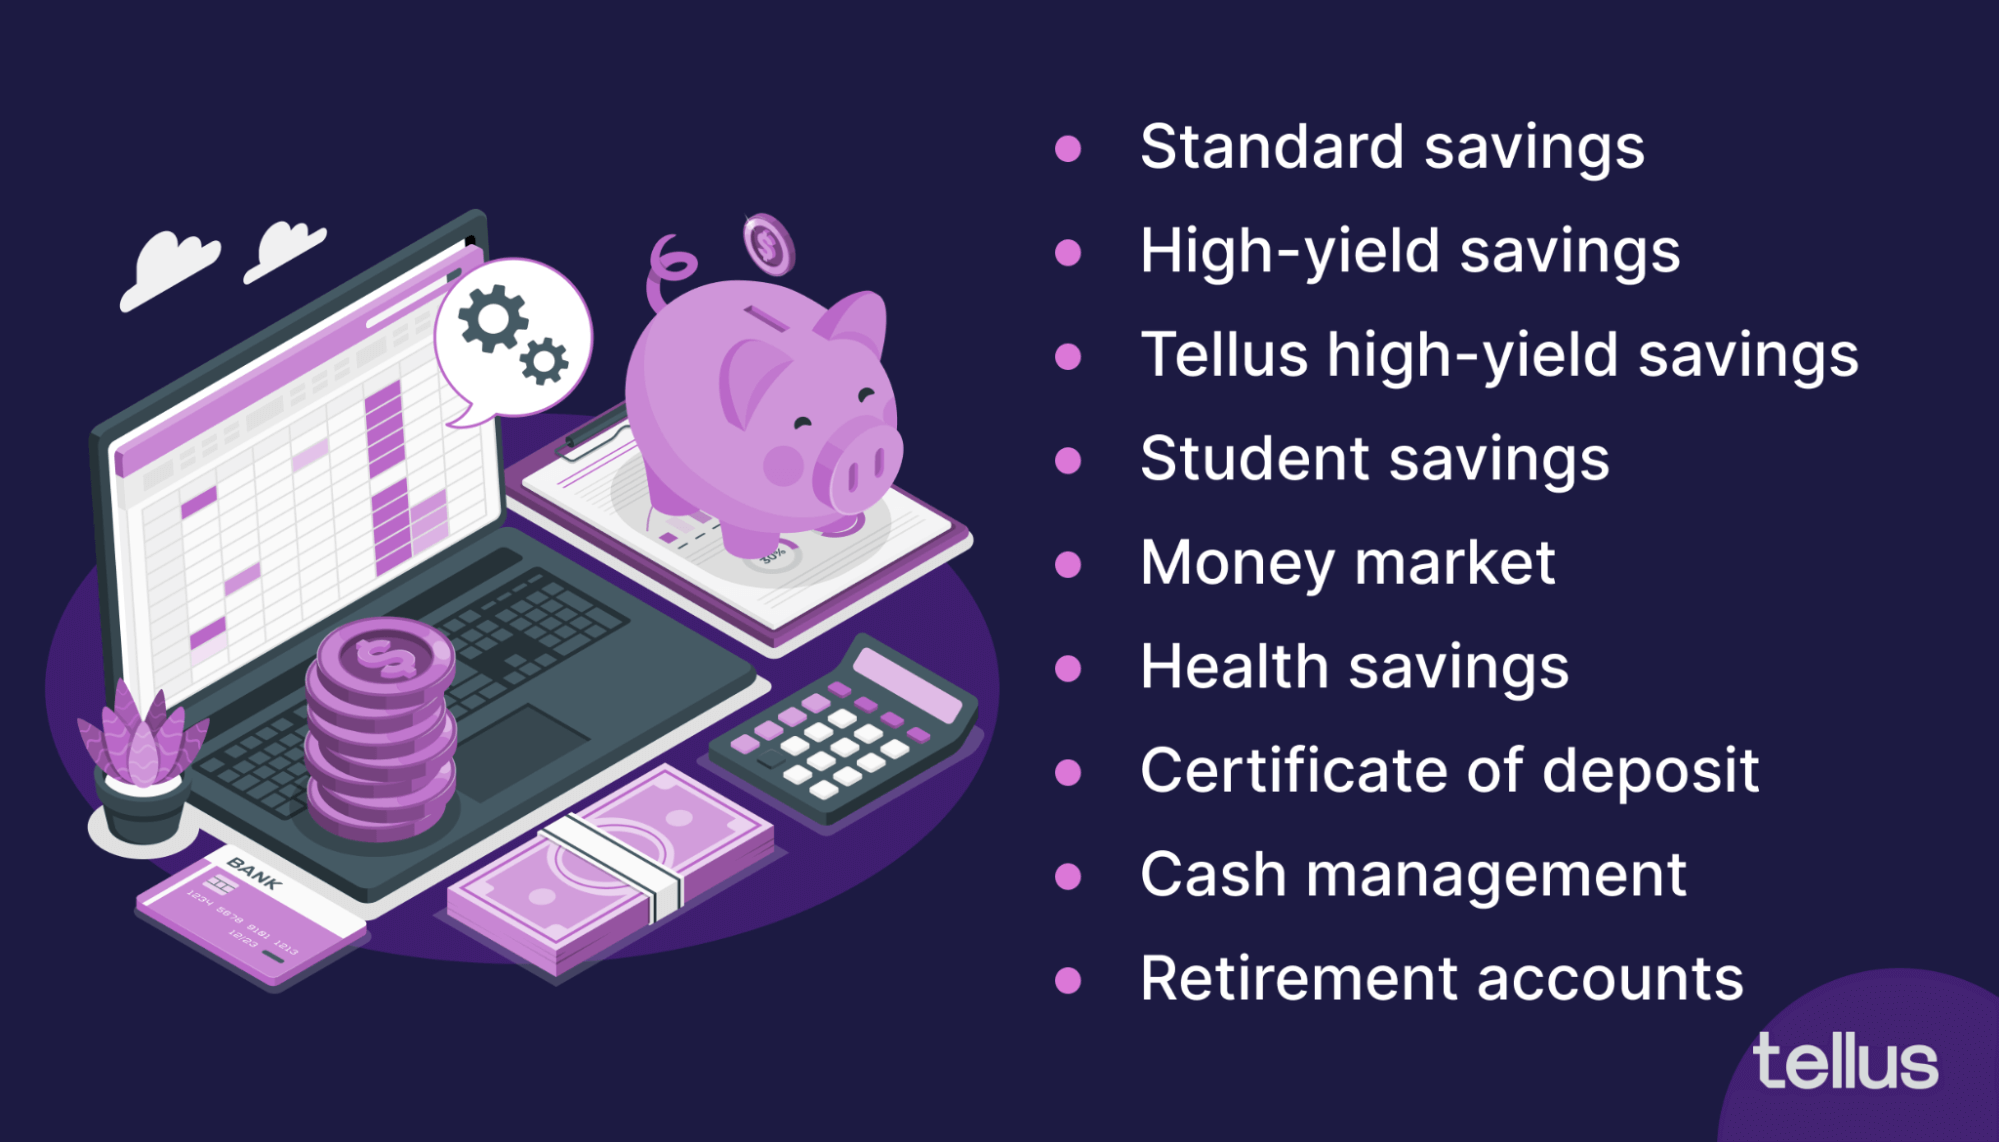 Alternatives to savings accounts